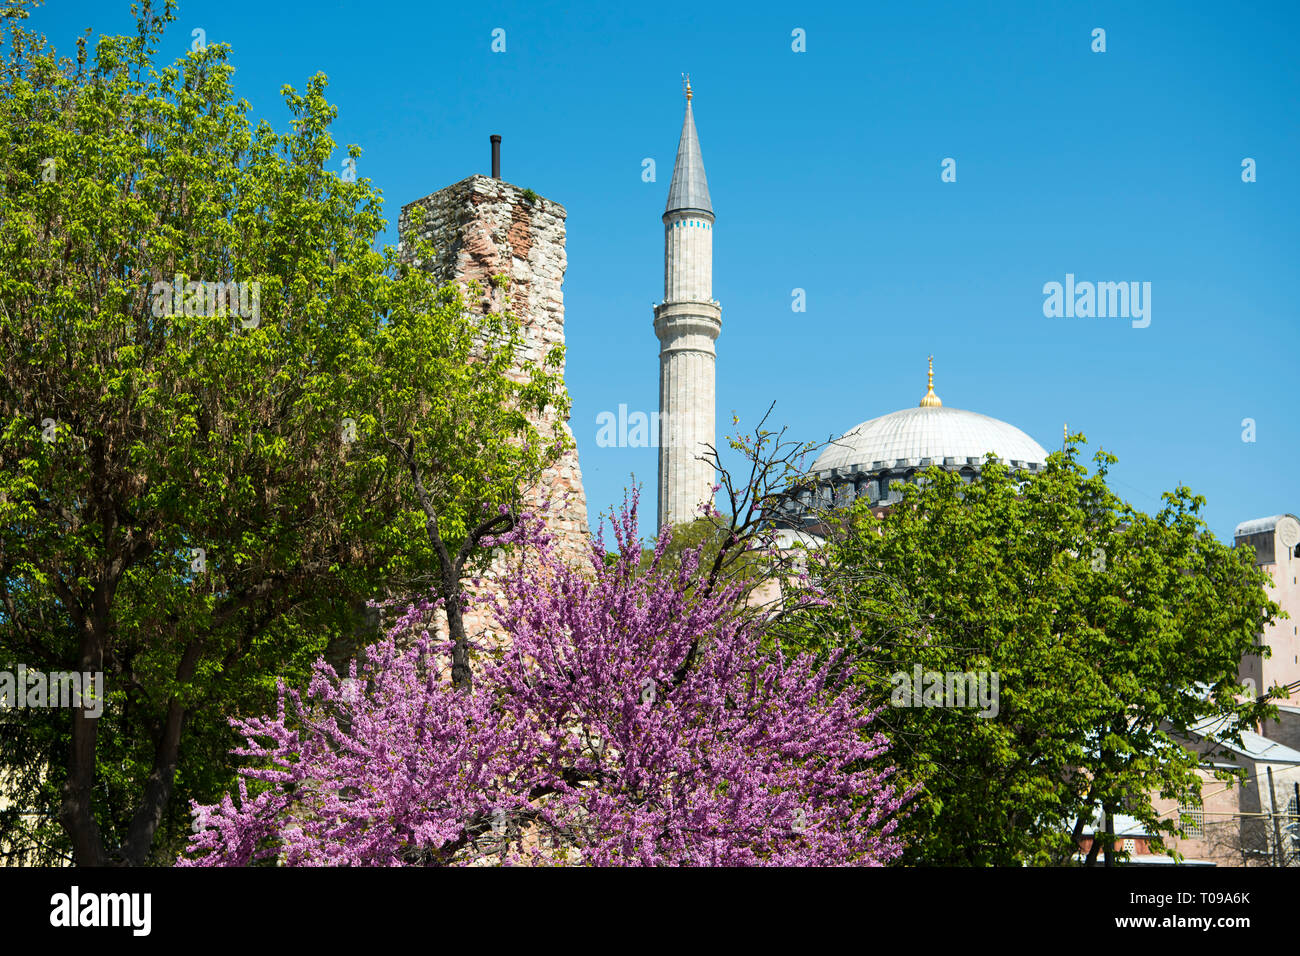 Türkei, Istanbul, Sultanahmet, Park über der Yerebatan-Zisterne am Anfang der Divan Yolu, Wasserturm über der Zisterne und Minarett der Hagia Sophia Stock Photo